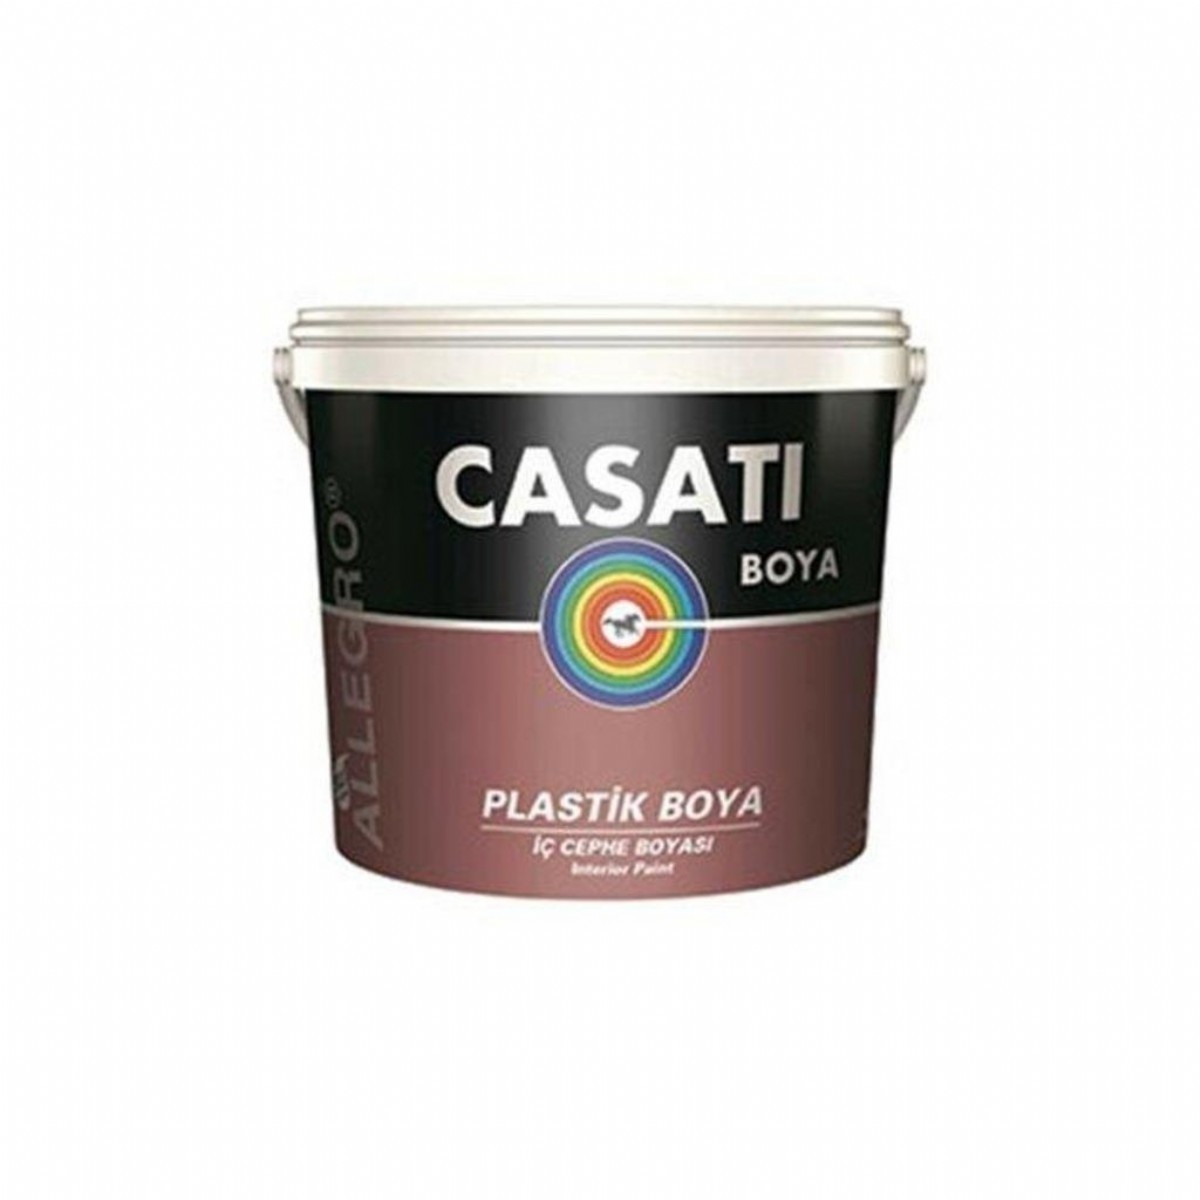 Casati Allegro Plastik İç Cephe Boyası Beyaz 10 Kg 15250010001